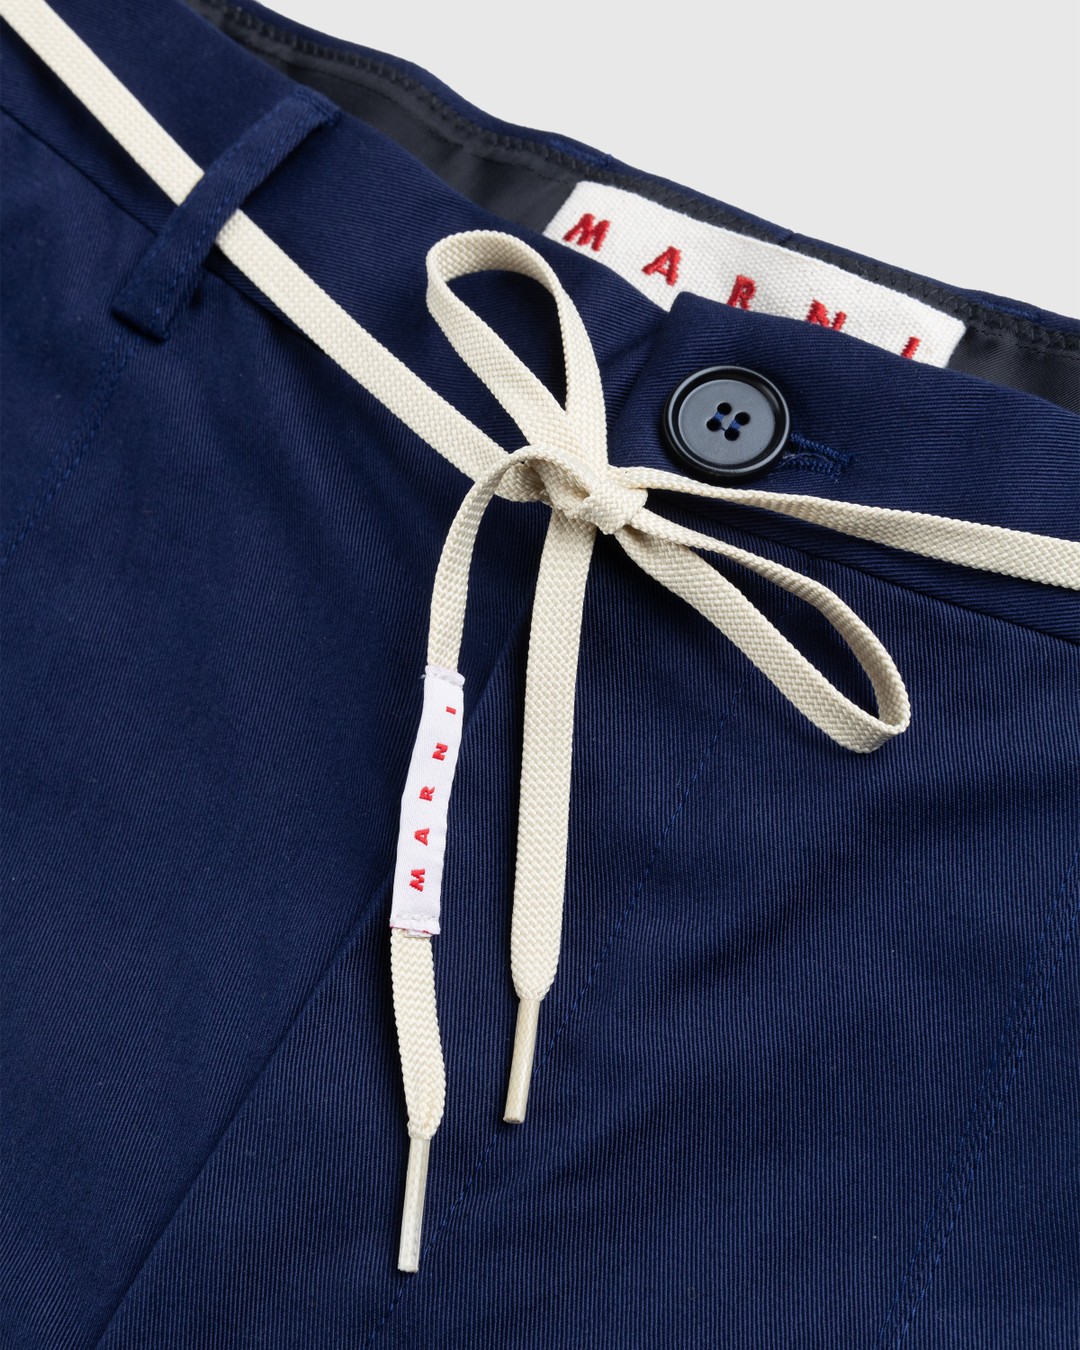 Marni – Drawstring Chino Shorts Ink Blue - Shorts - Blue - Image 4